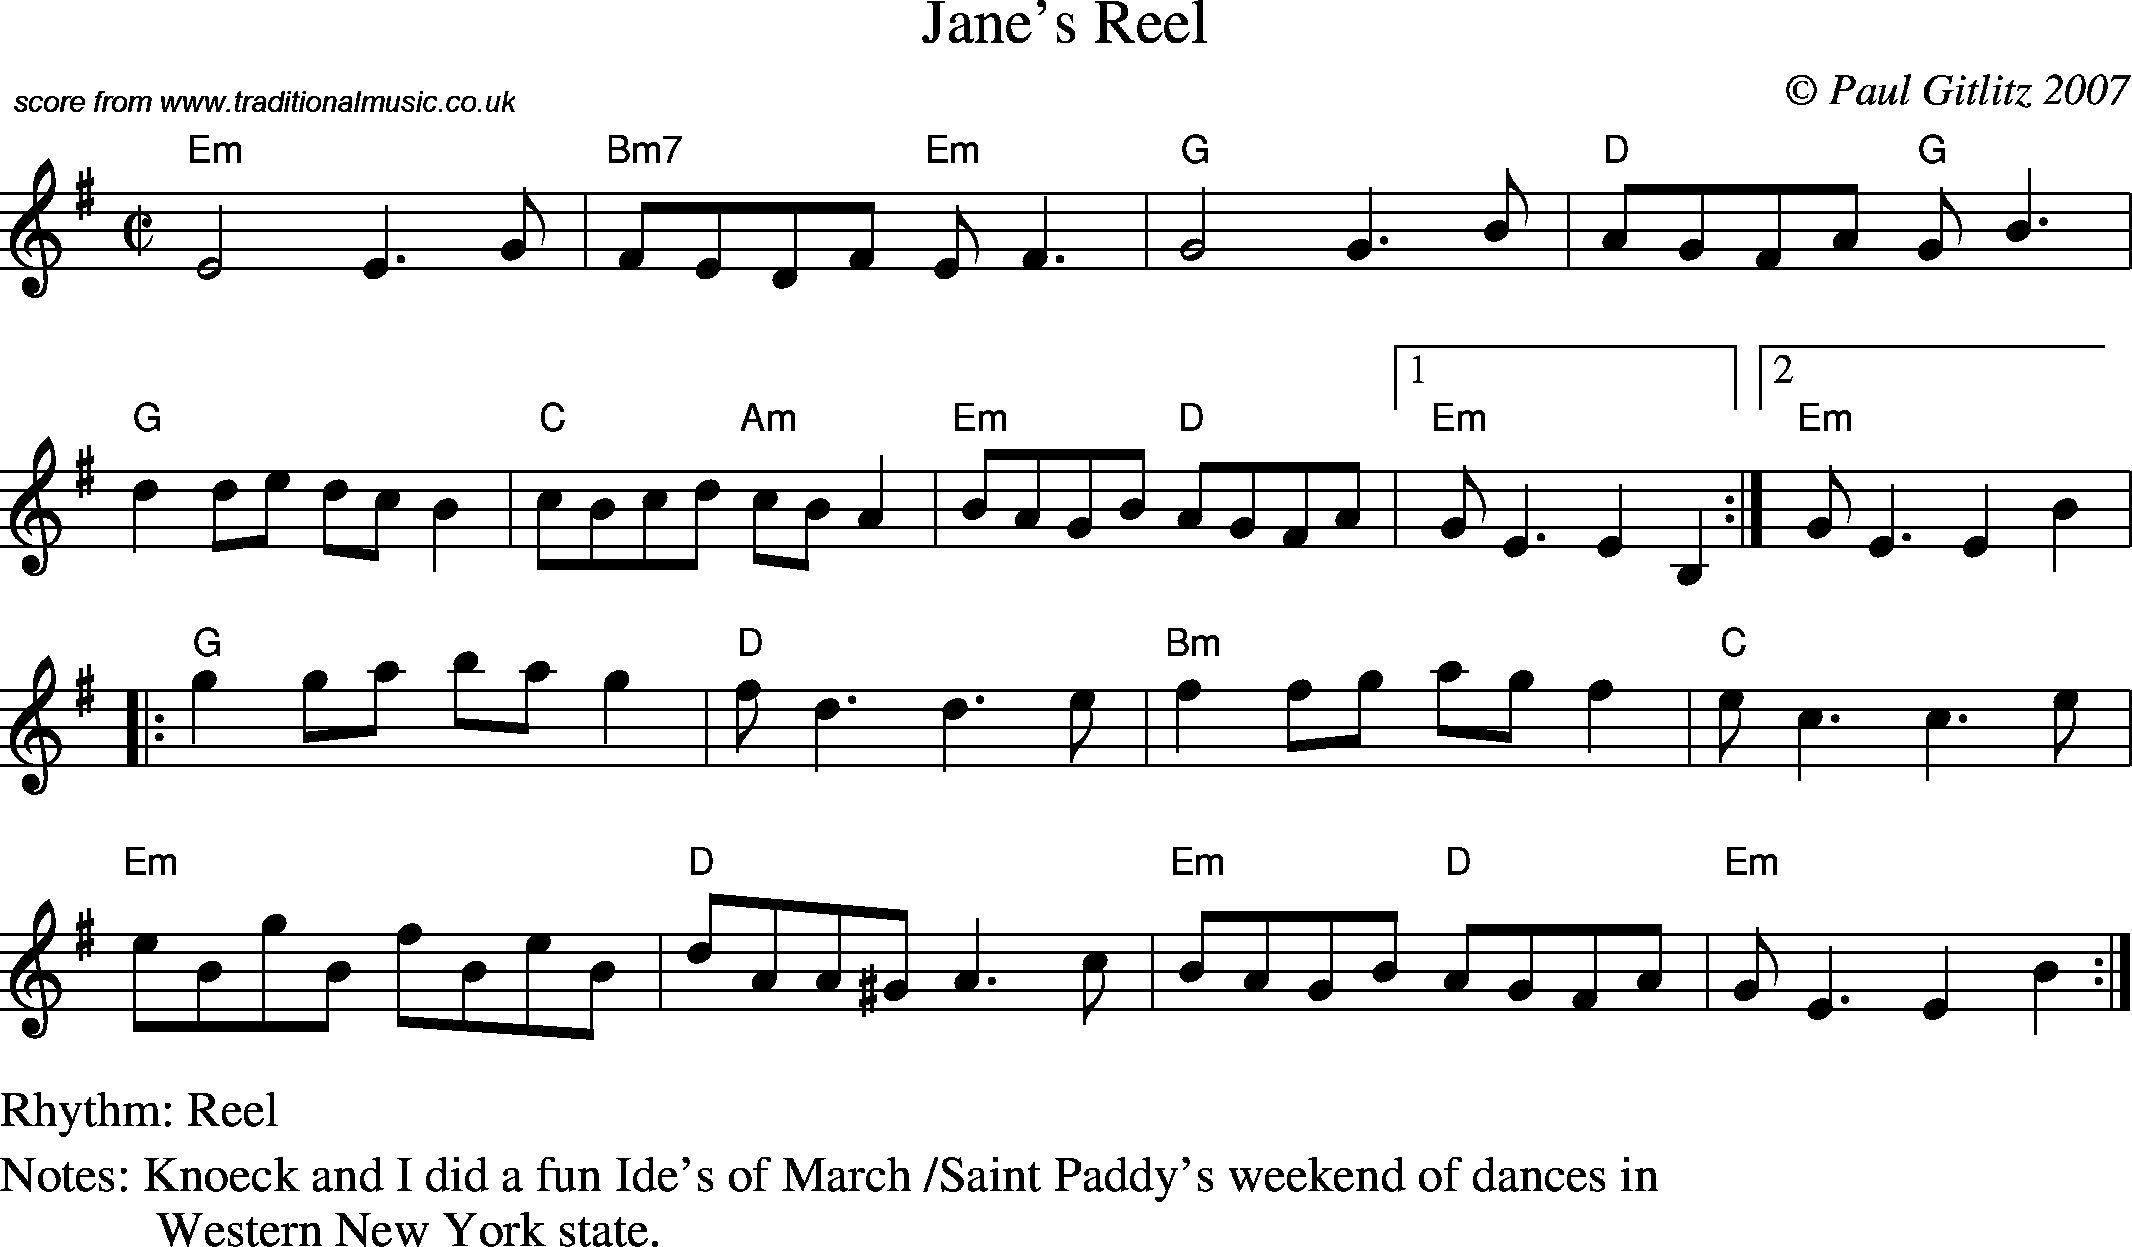 Sheet Music Score for Reel - Jane's Reel